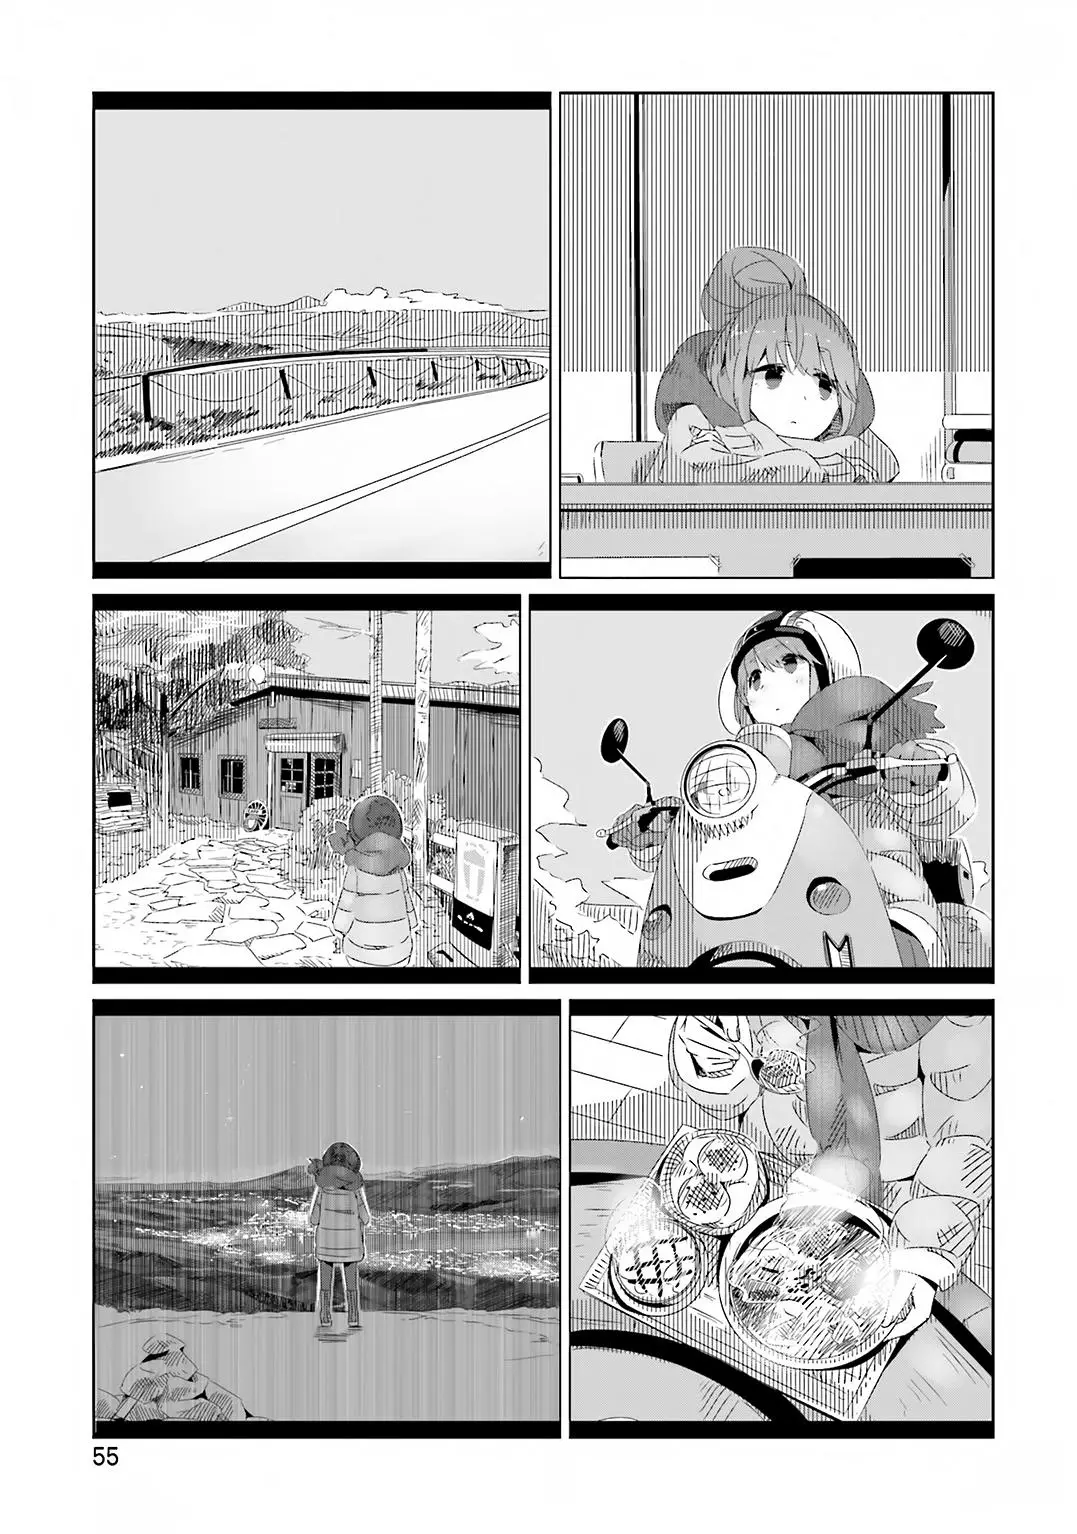 Yurucamp - 9.1 page 3-39ea1607